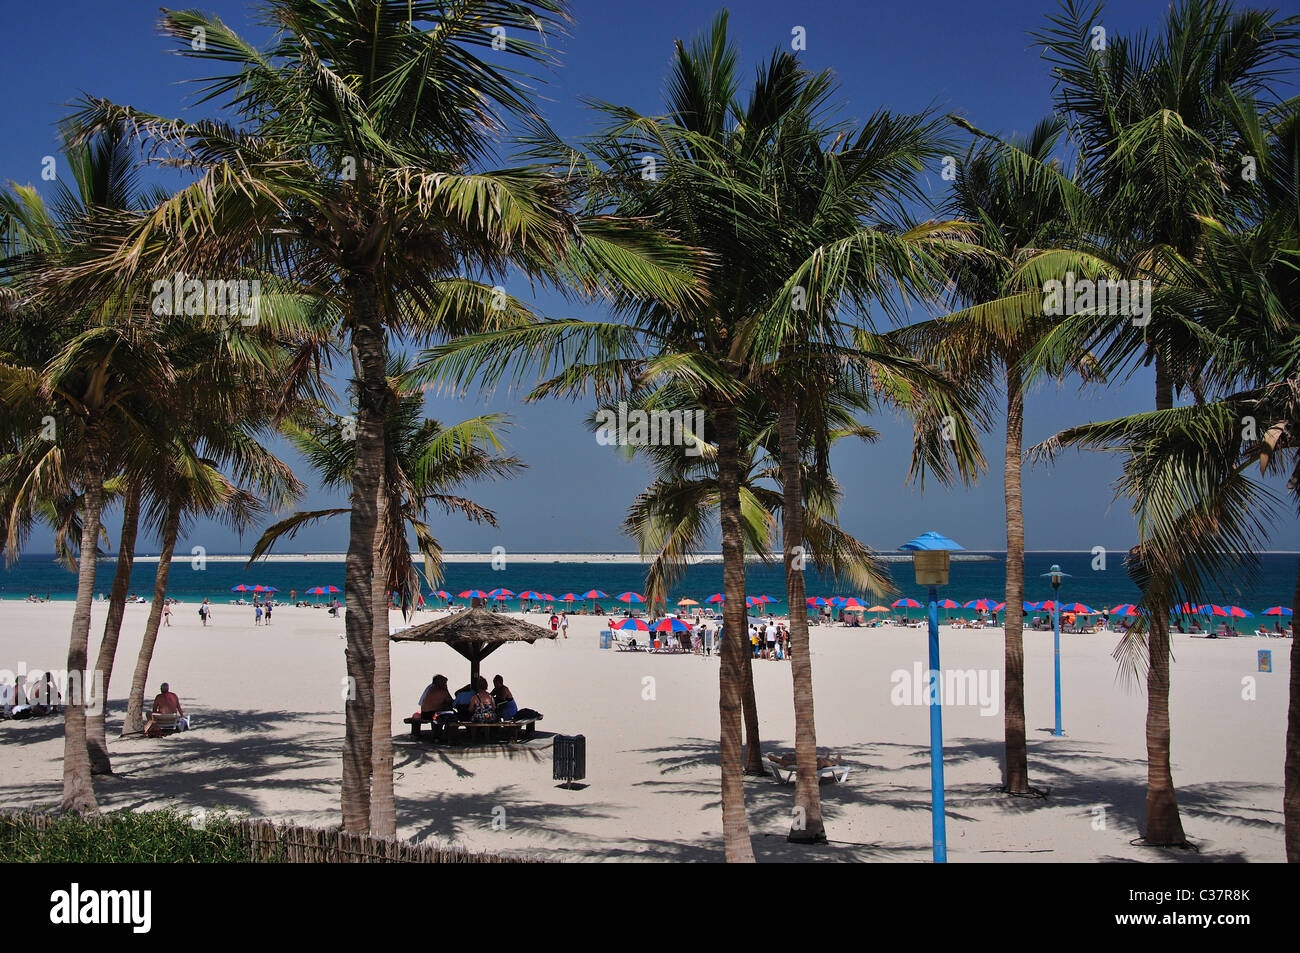 Beach view, Jumeirah Beach Park, Jumeirah, Dubai, United Arab Emirates Stock Photo